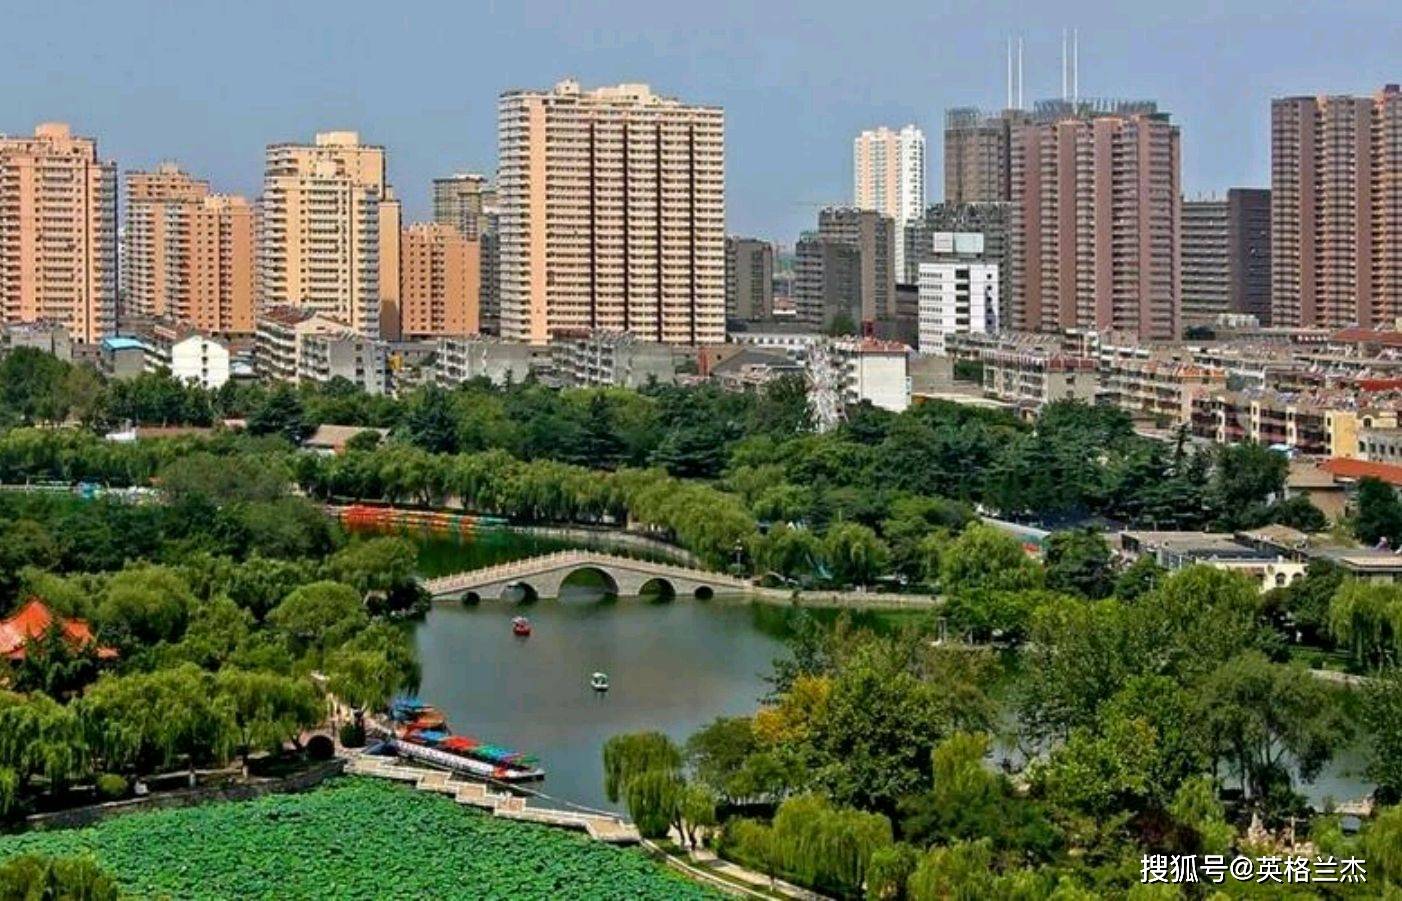 人口最多的城市_河北人口最多的地级市,面积比北京还要大,常住人口超过1100万